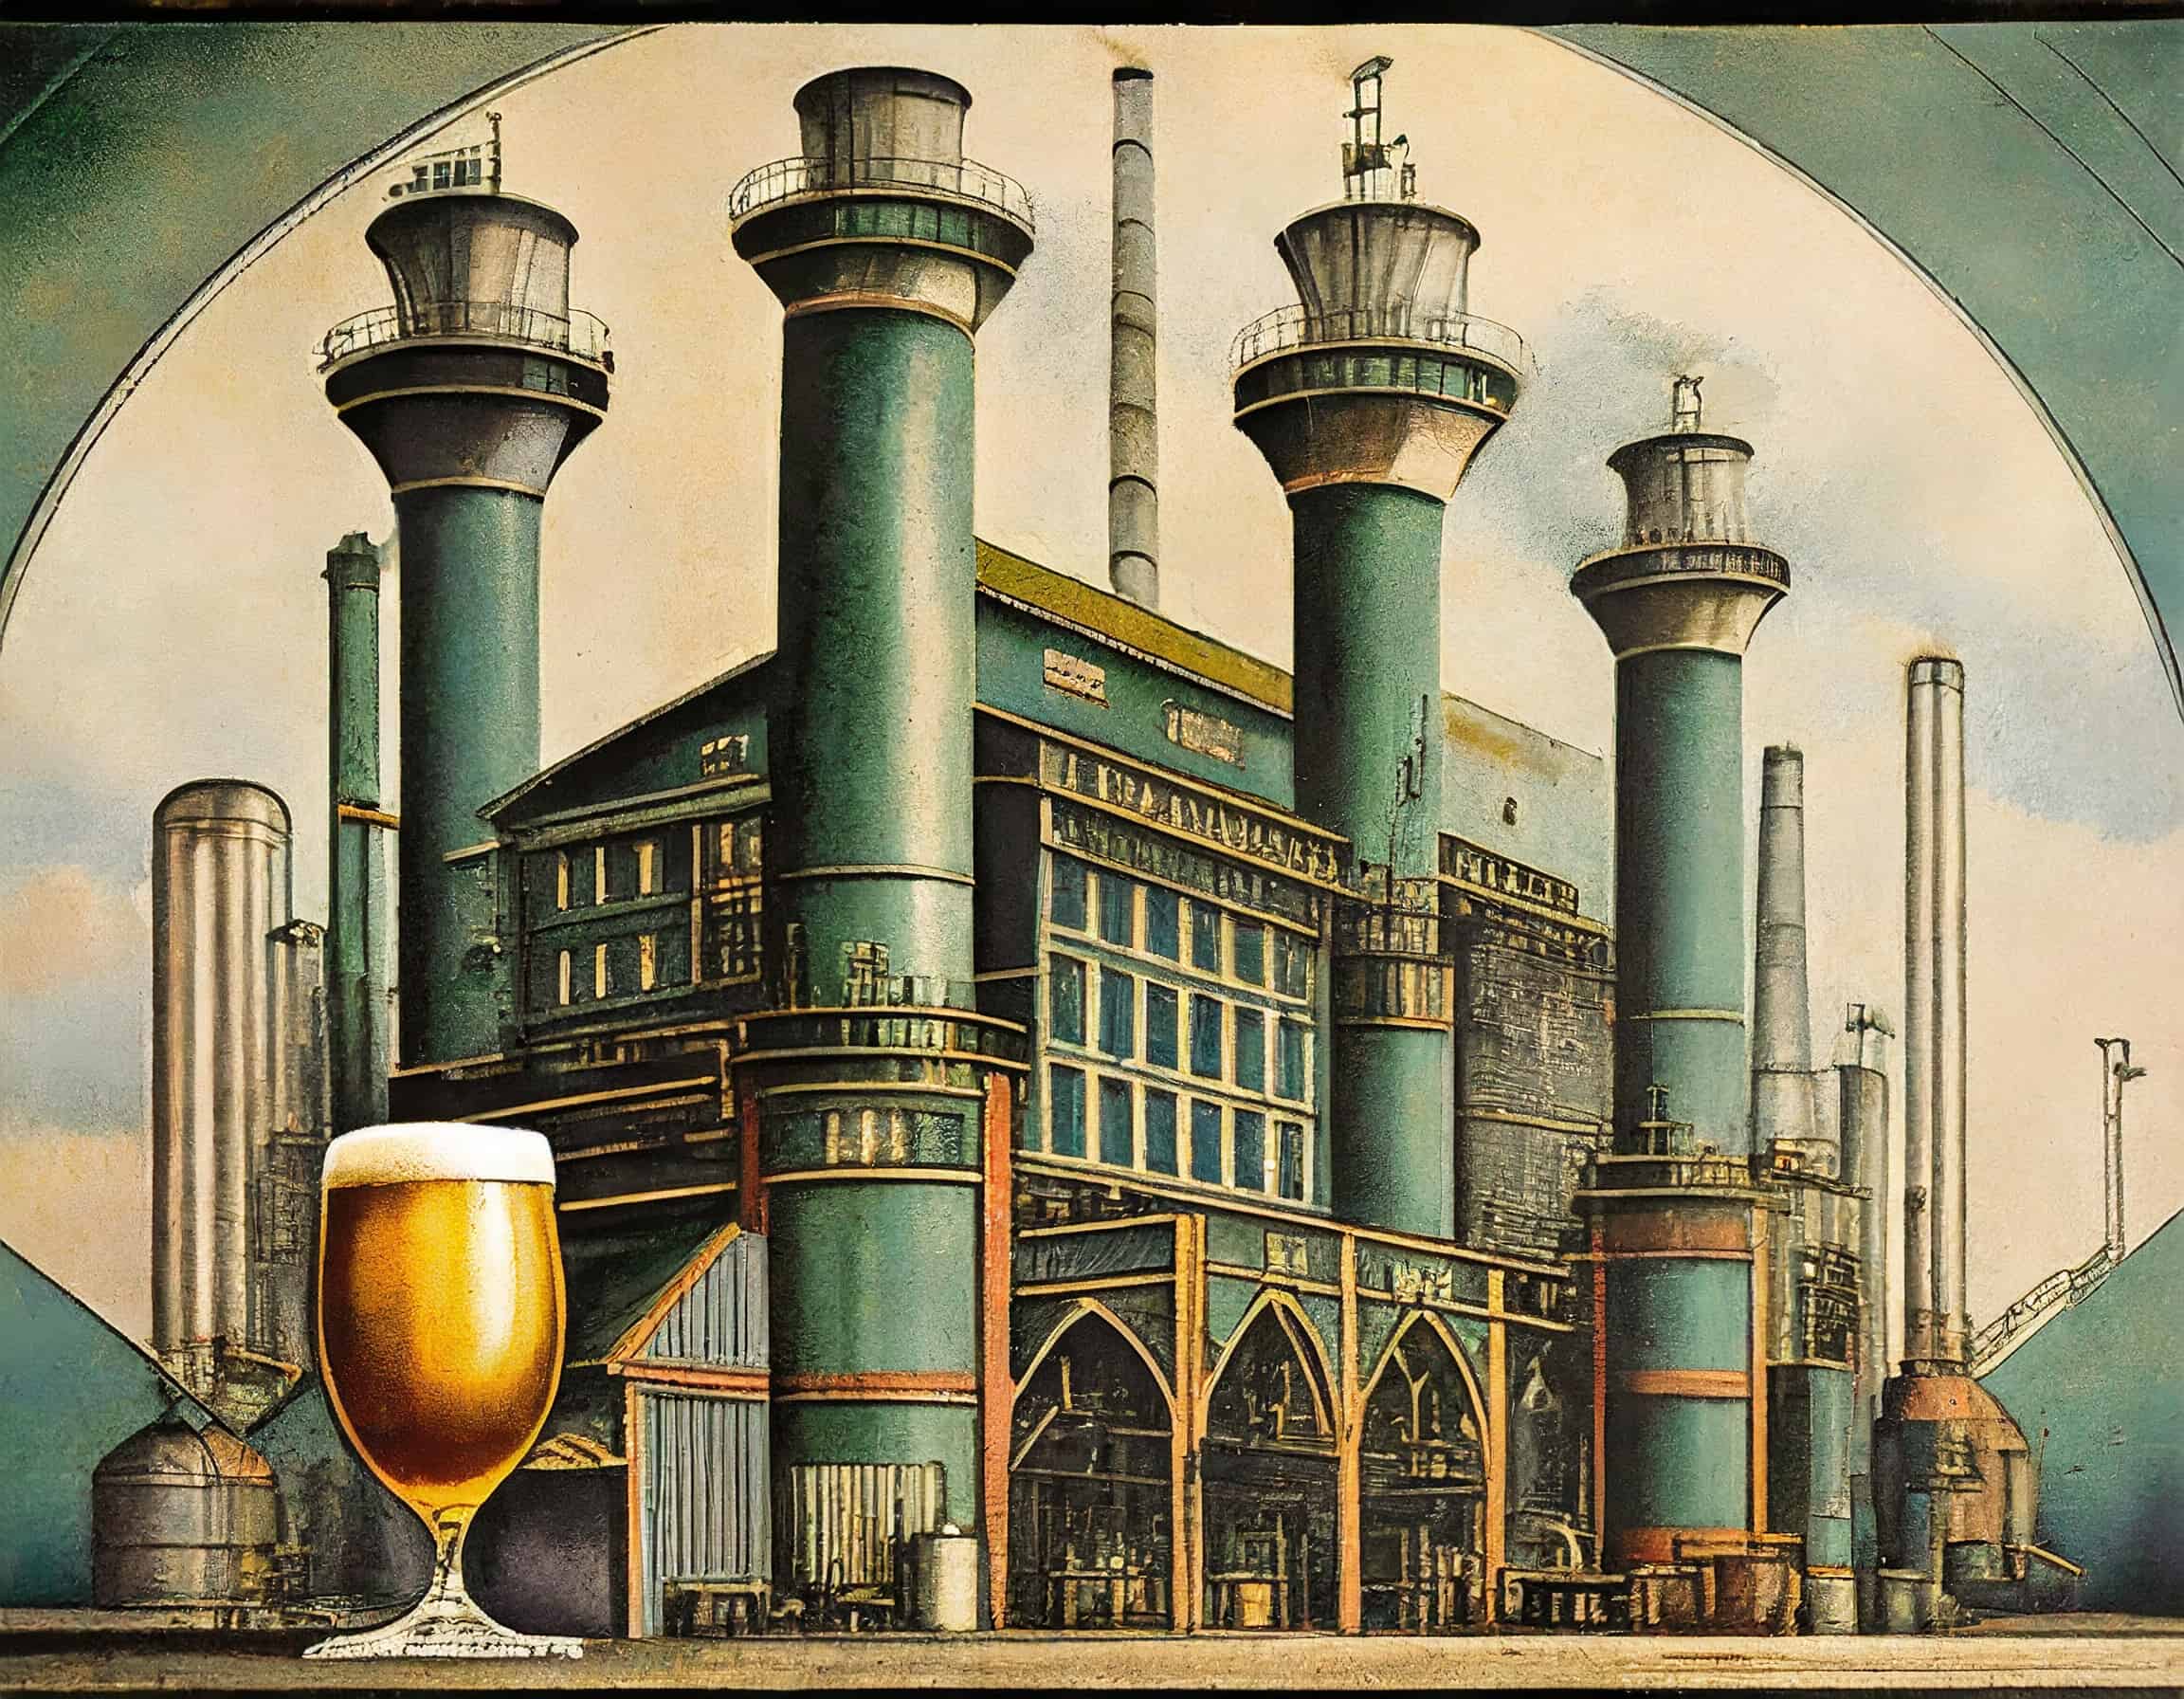 História da Cerveja: Industrial Revolution and Modernization of Beer